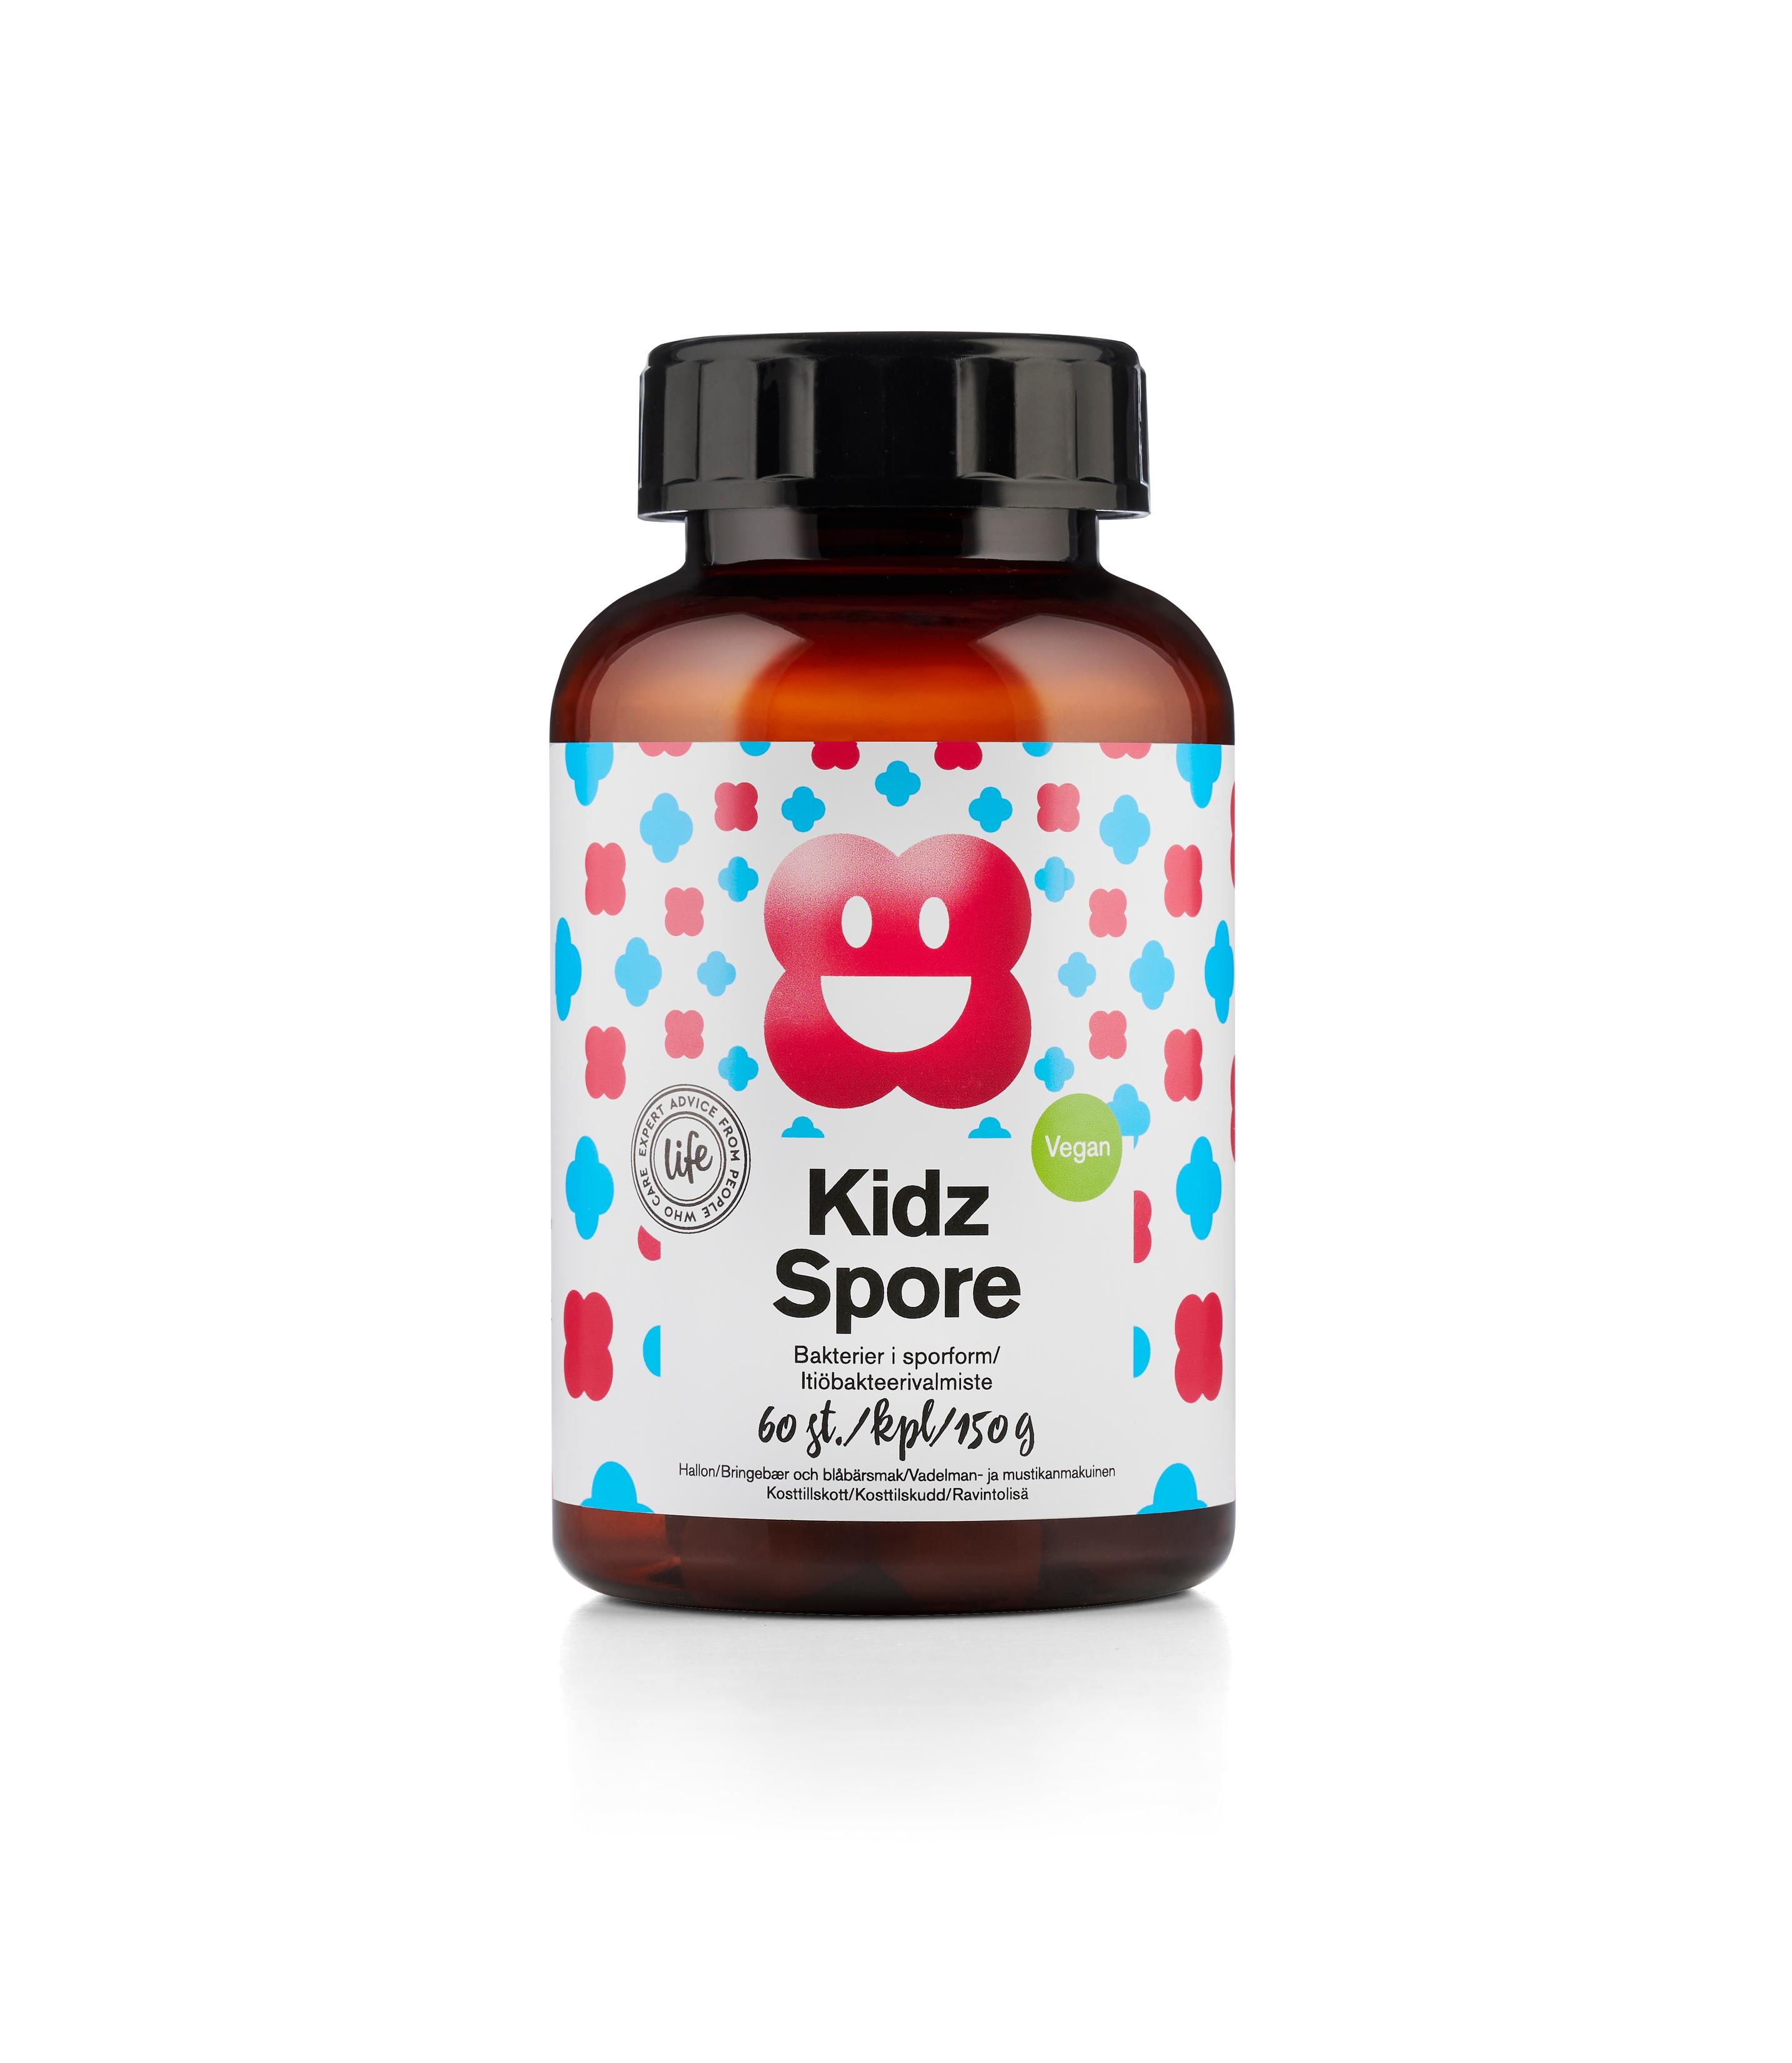 Life Kidz Spore vegaaninen itiöbakteerivalmiste tuote hintaan 13,9€ liikkeestä Life